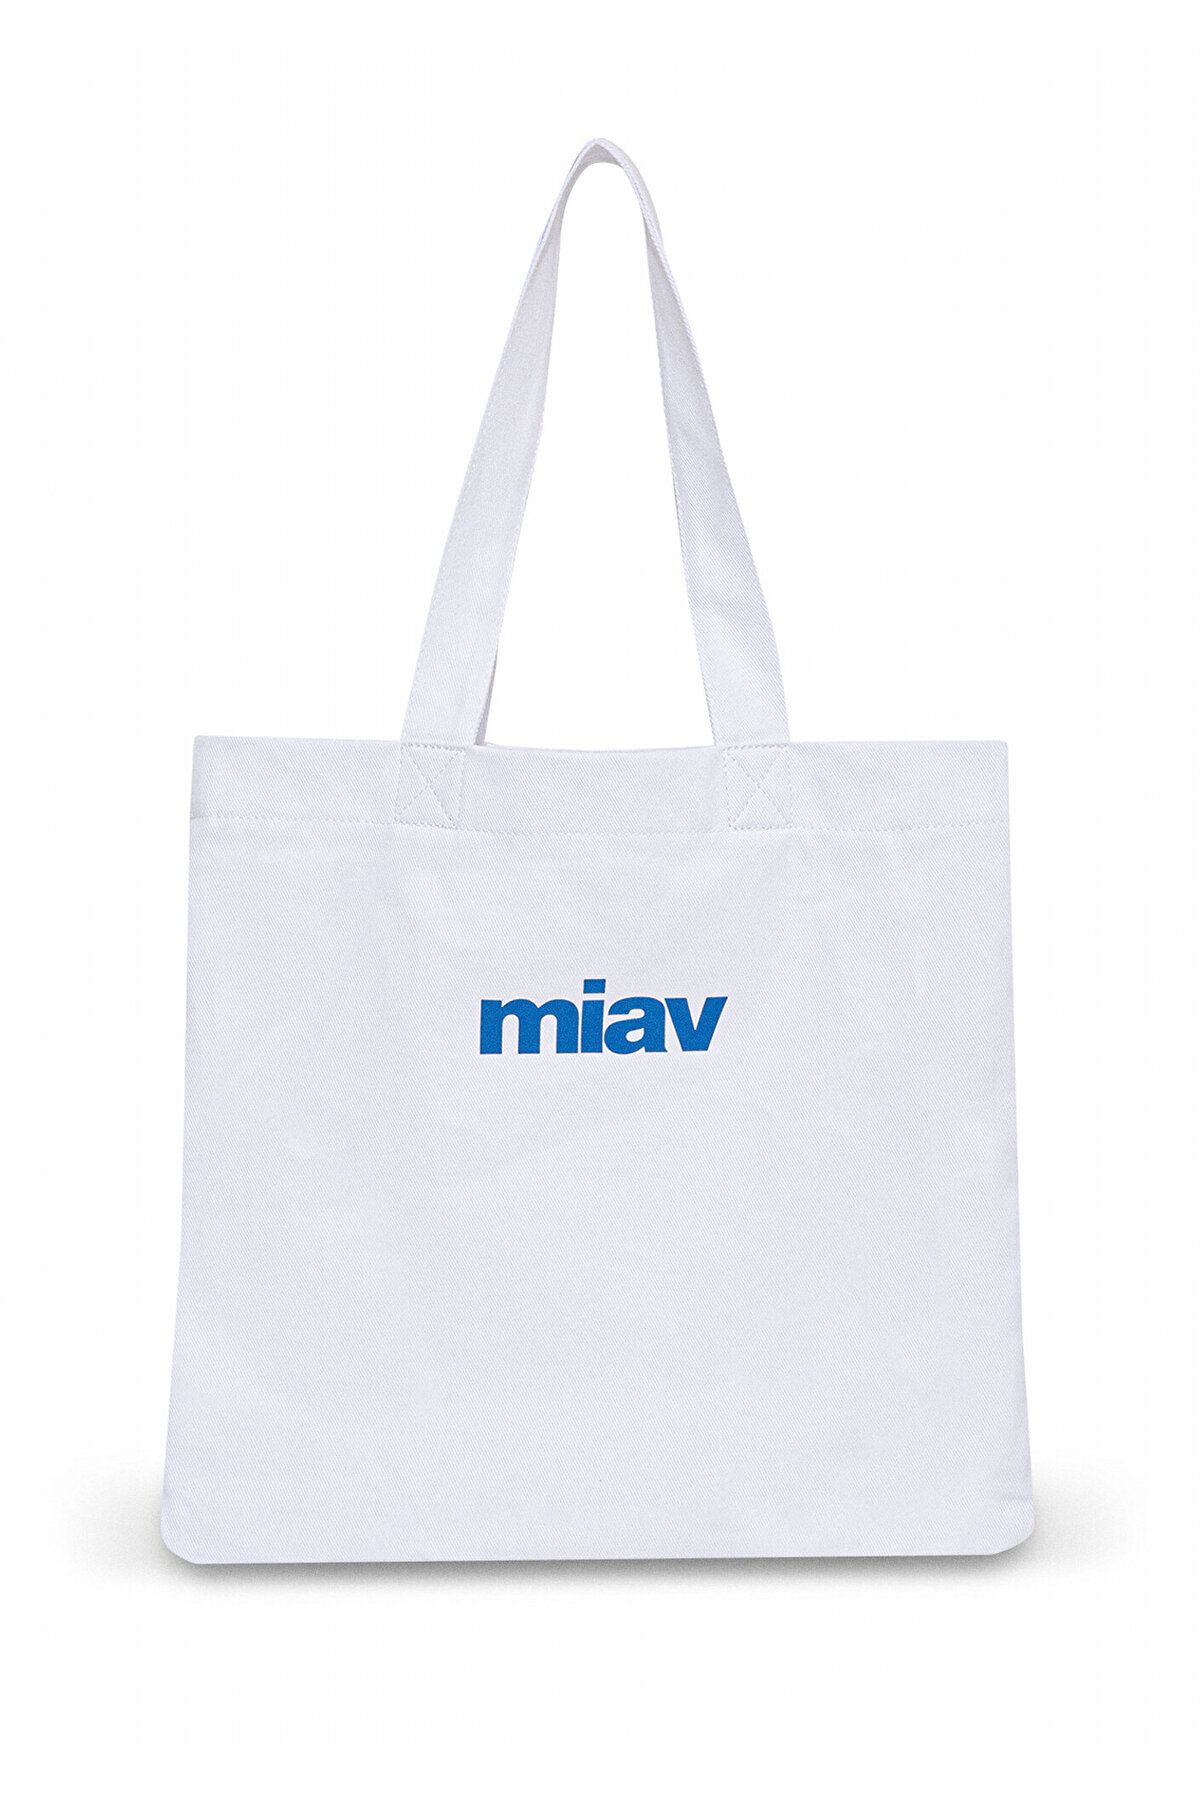 Mavi کیف سفید چاپ شده MIAV 1912036-620